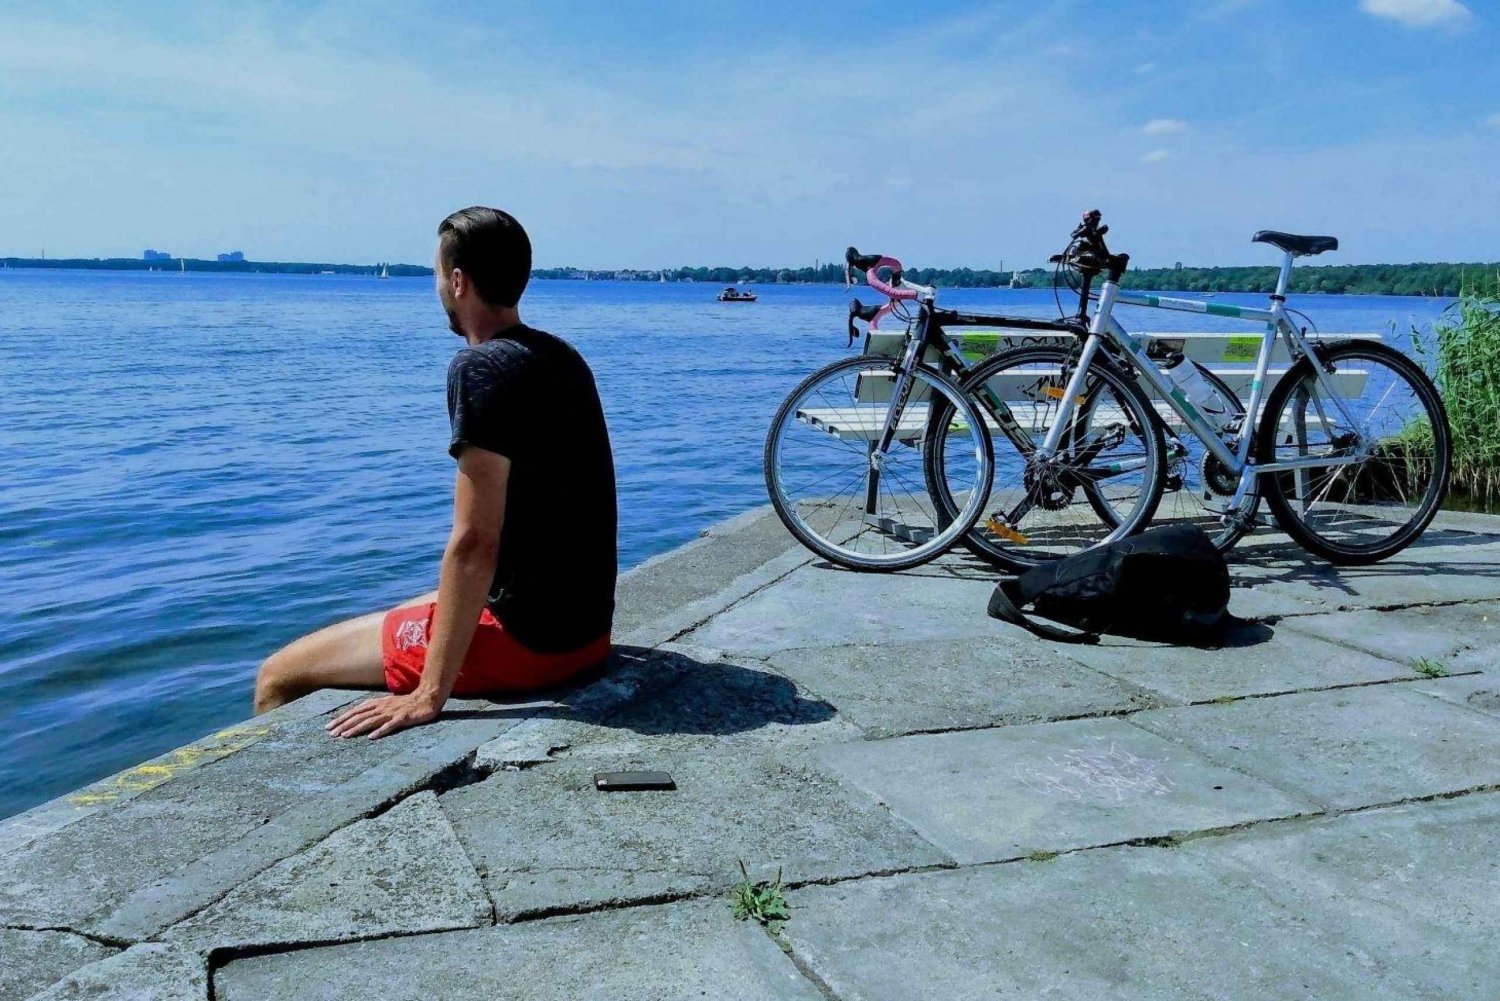 O maior lago e lagoa de Berlim: Passeio de bicicleta, balsa solar, natação